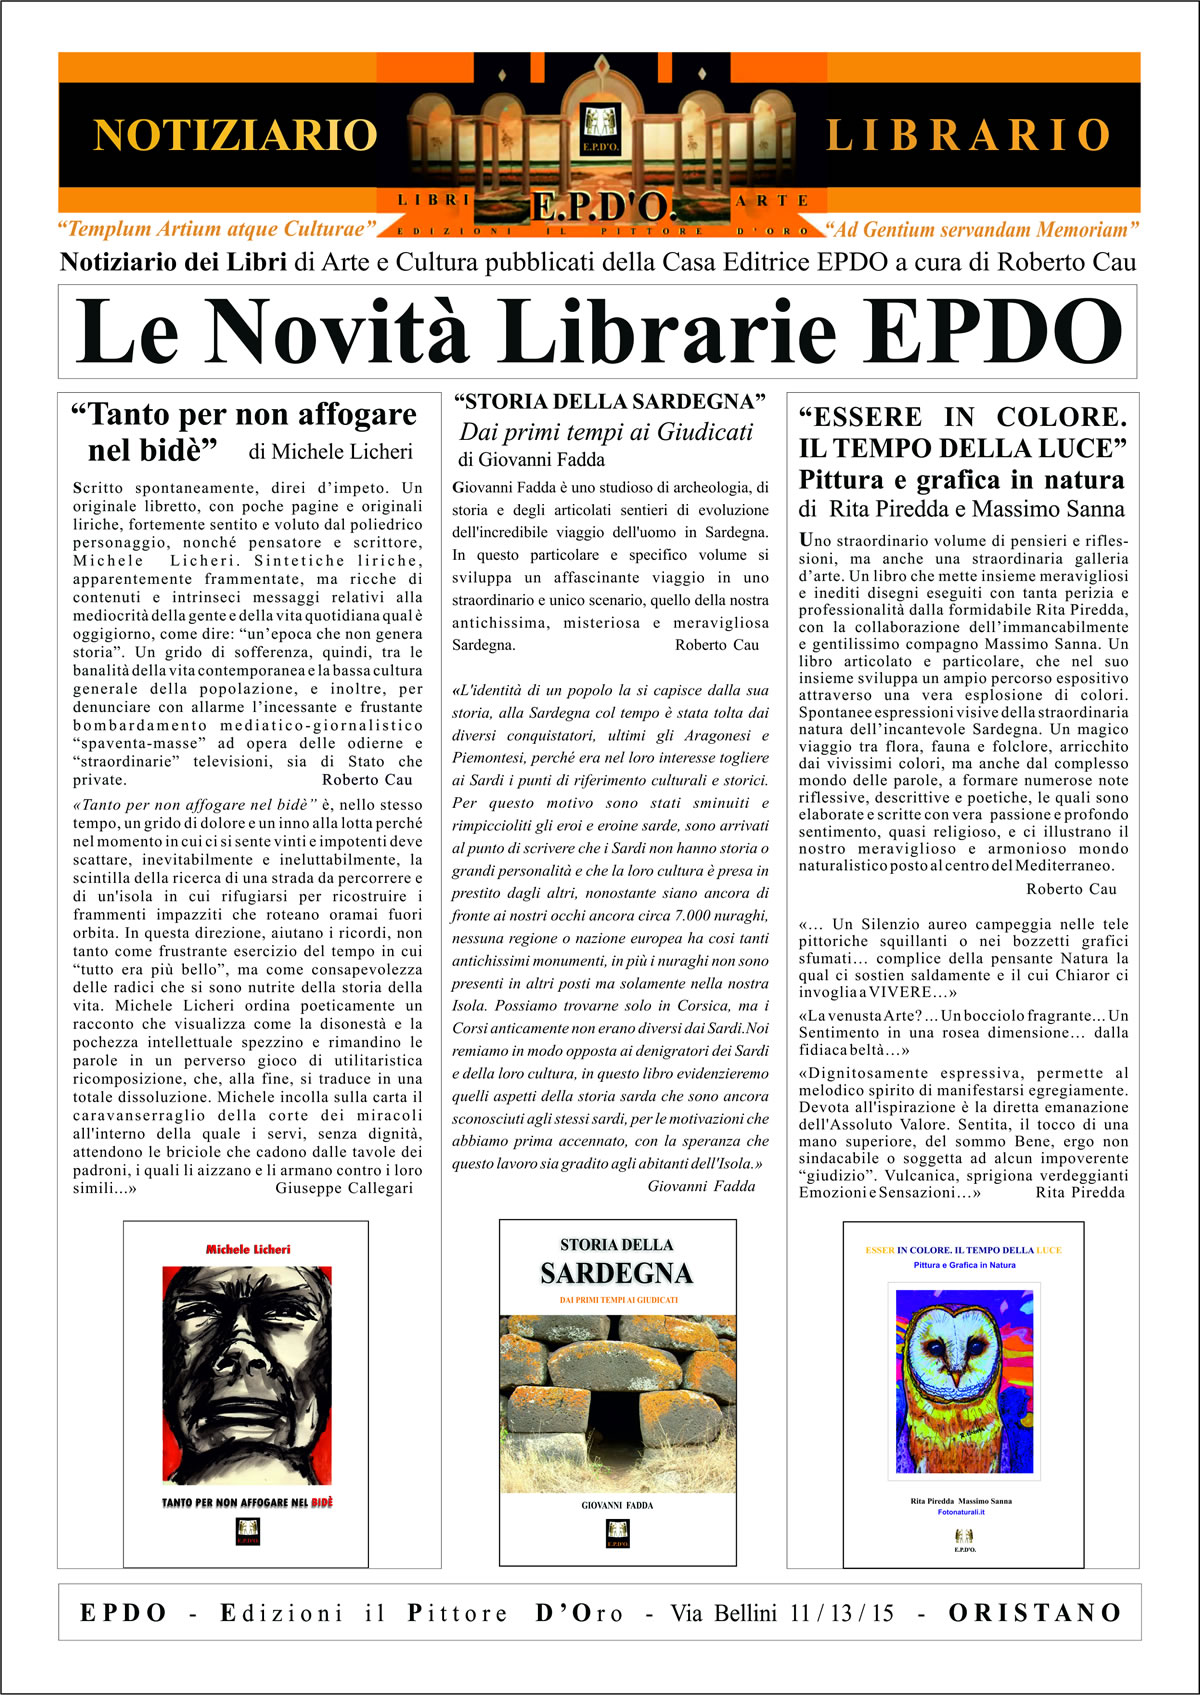 Notiziario Librario EPDO Oristano